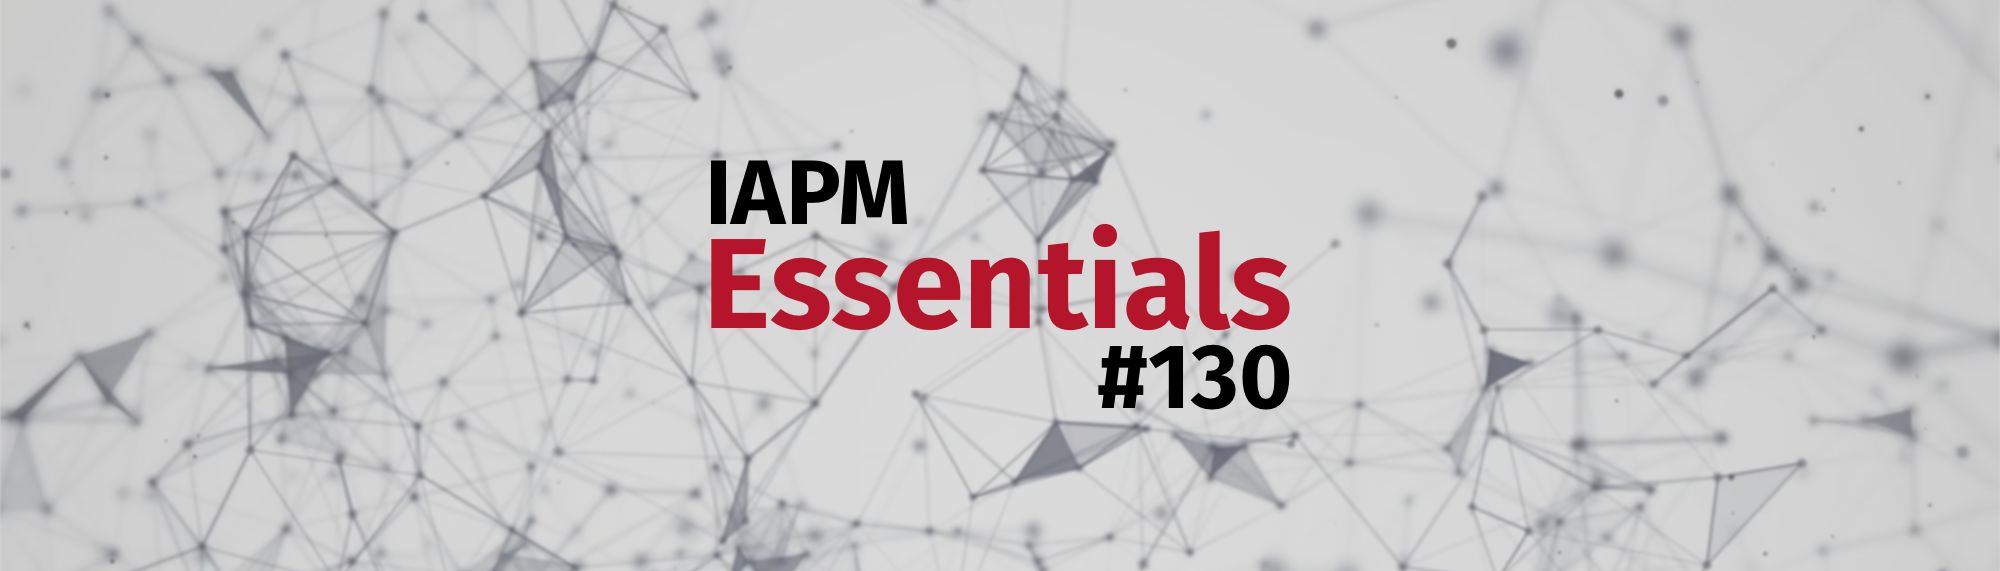 IAPM Essentials #130 - PM news | IAPM